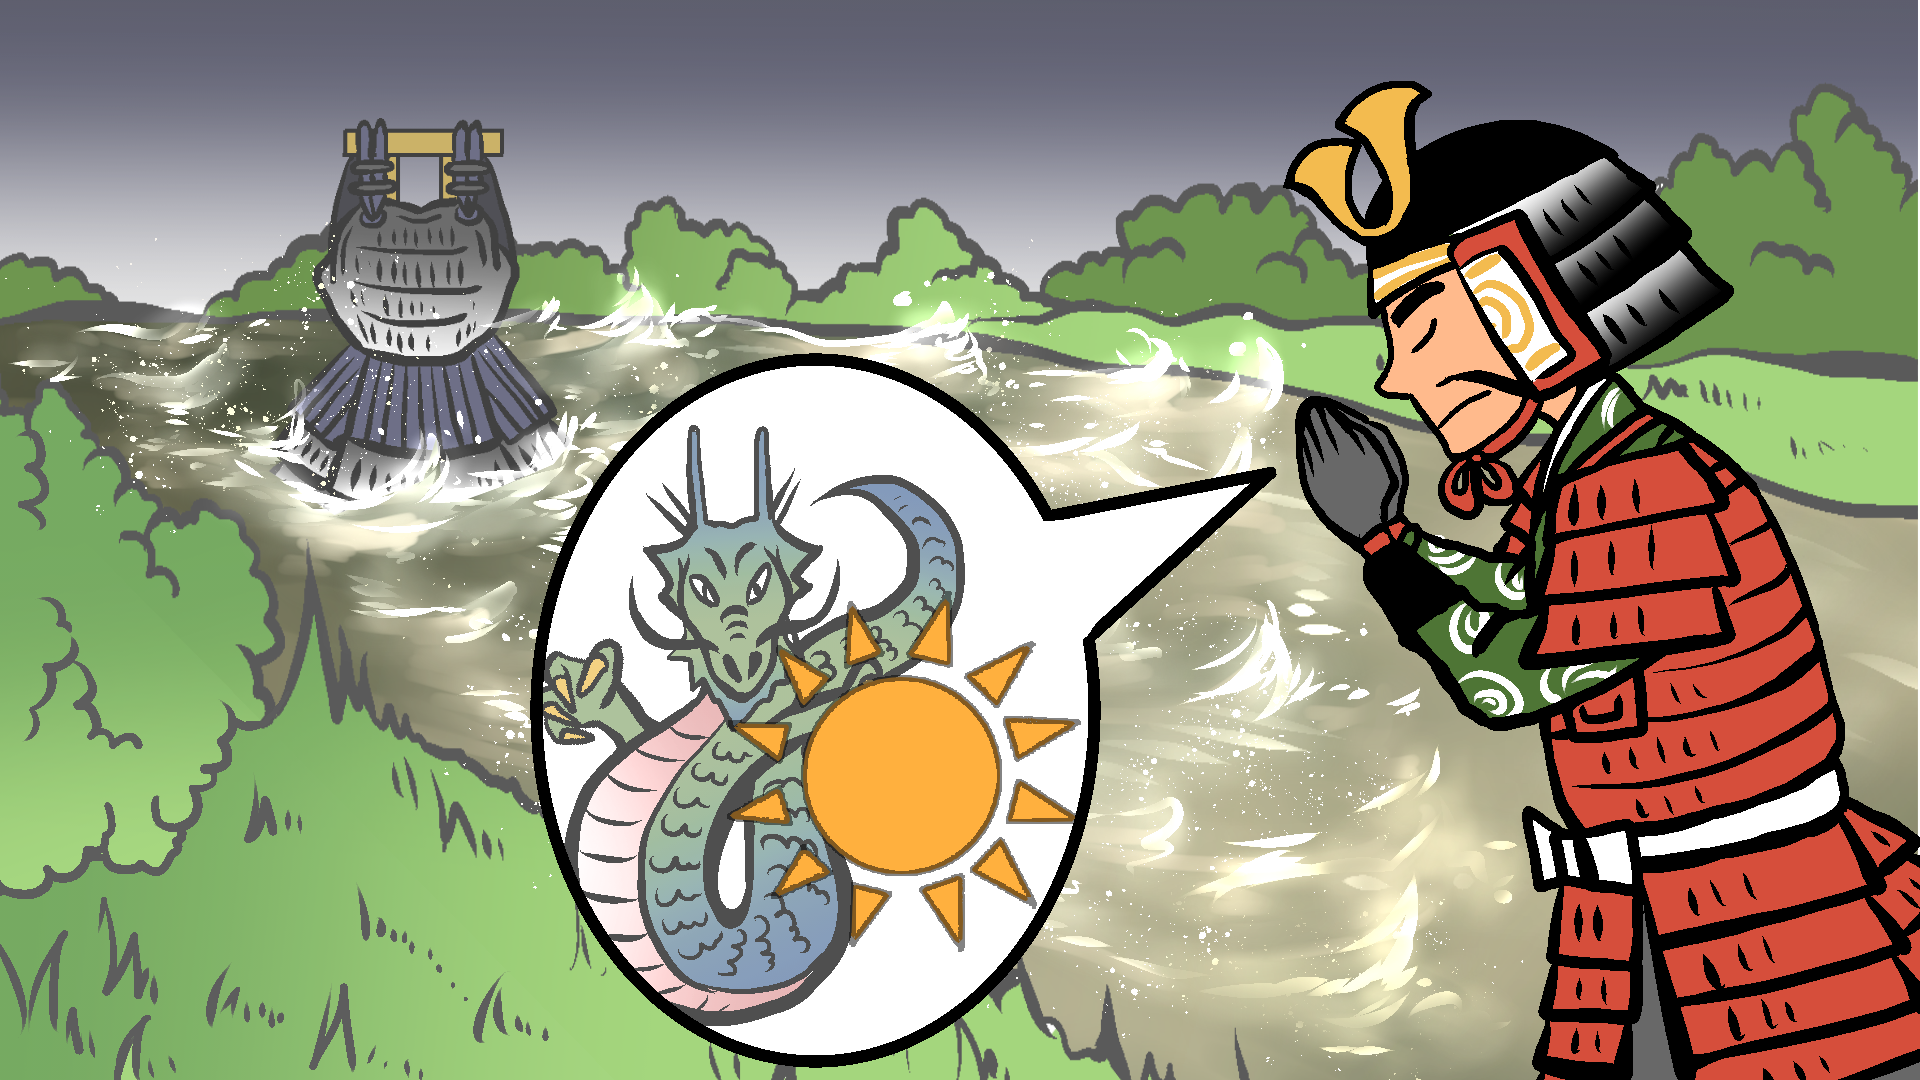 Yoroibashi: An Armor Sunk in the River